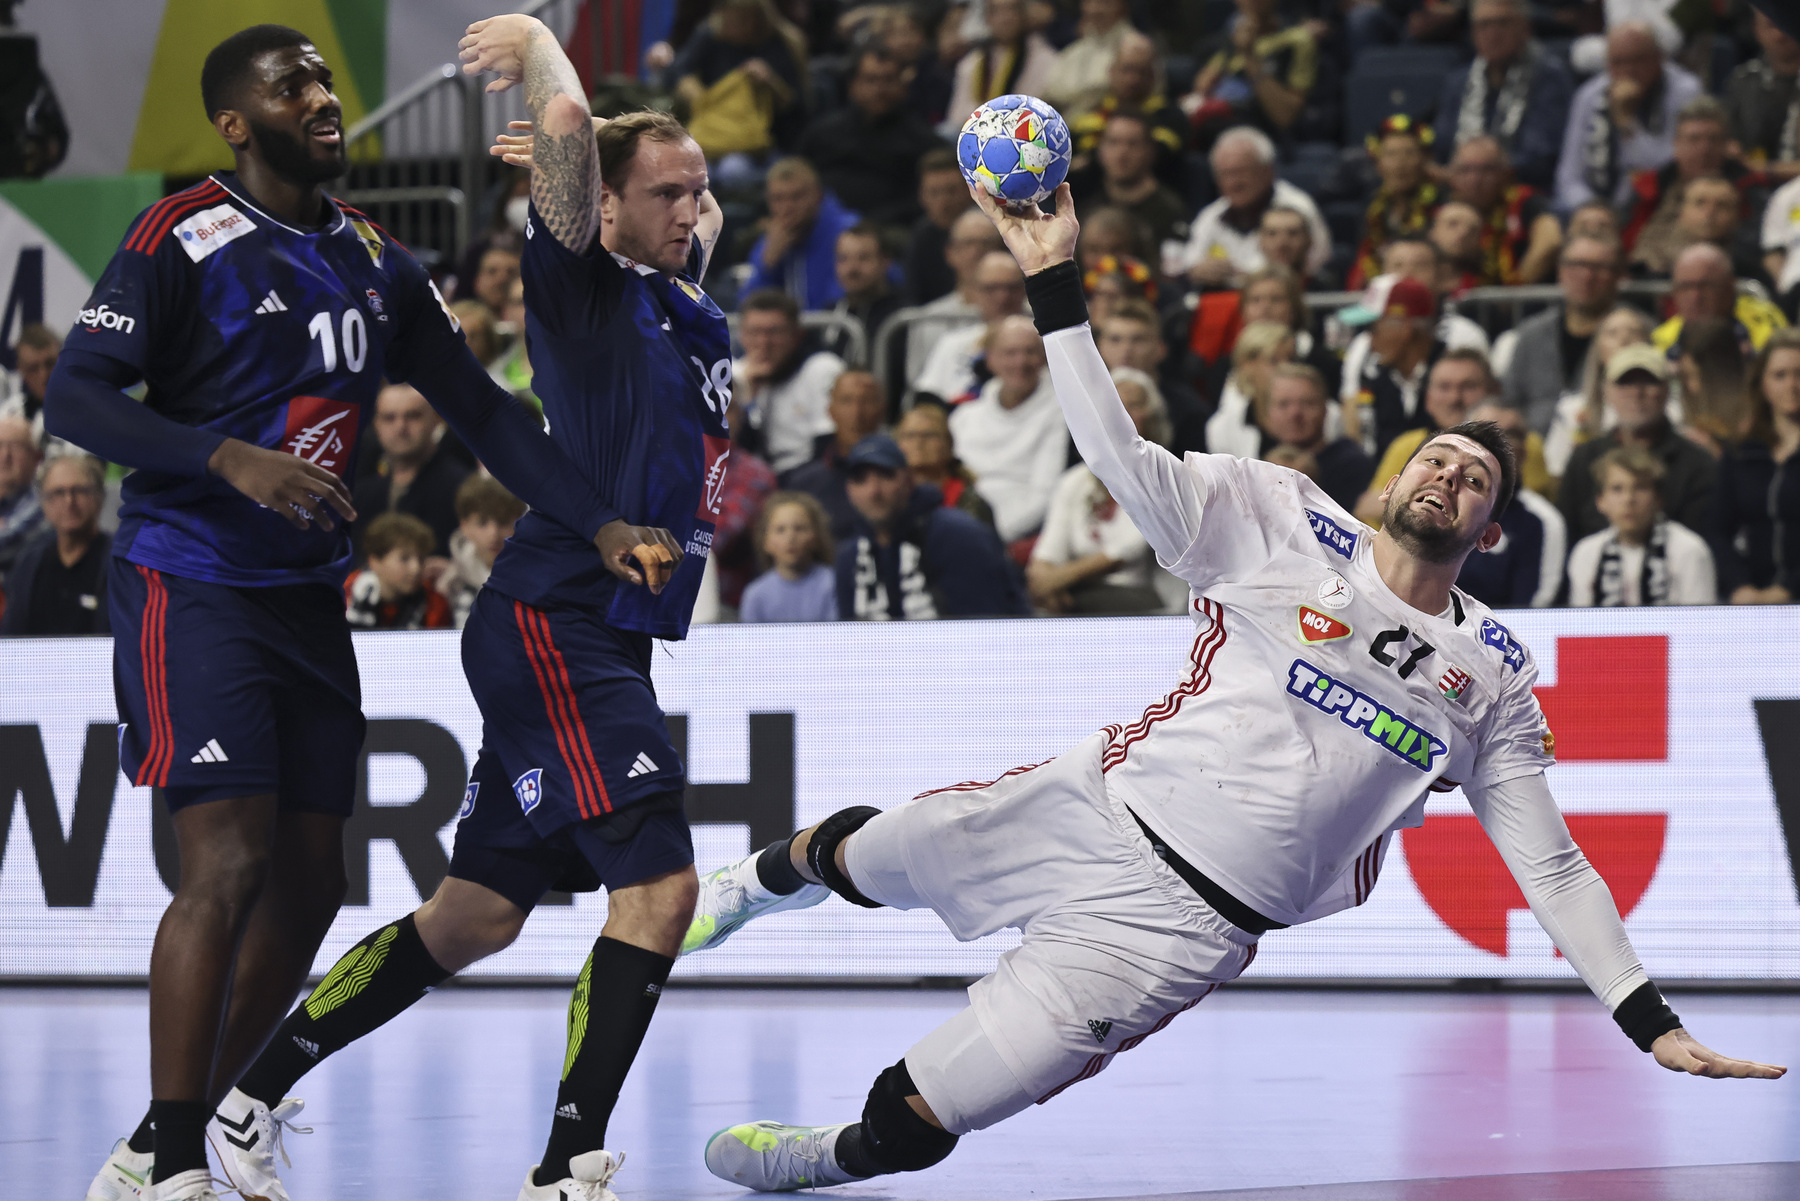 Rosta Miklós a férfi kézilabda olimpiai kvalifikációs Európa-bajnokság középdöntőjének negyedik fordulójában játszott Franciaország - Magyarország mérkőzésen